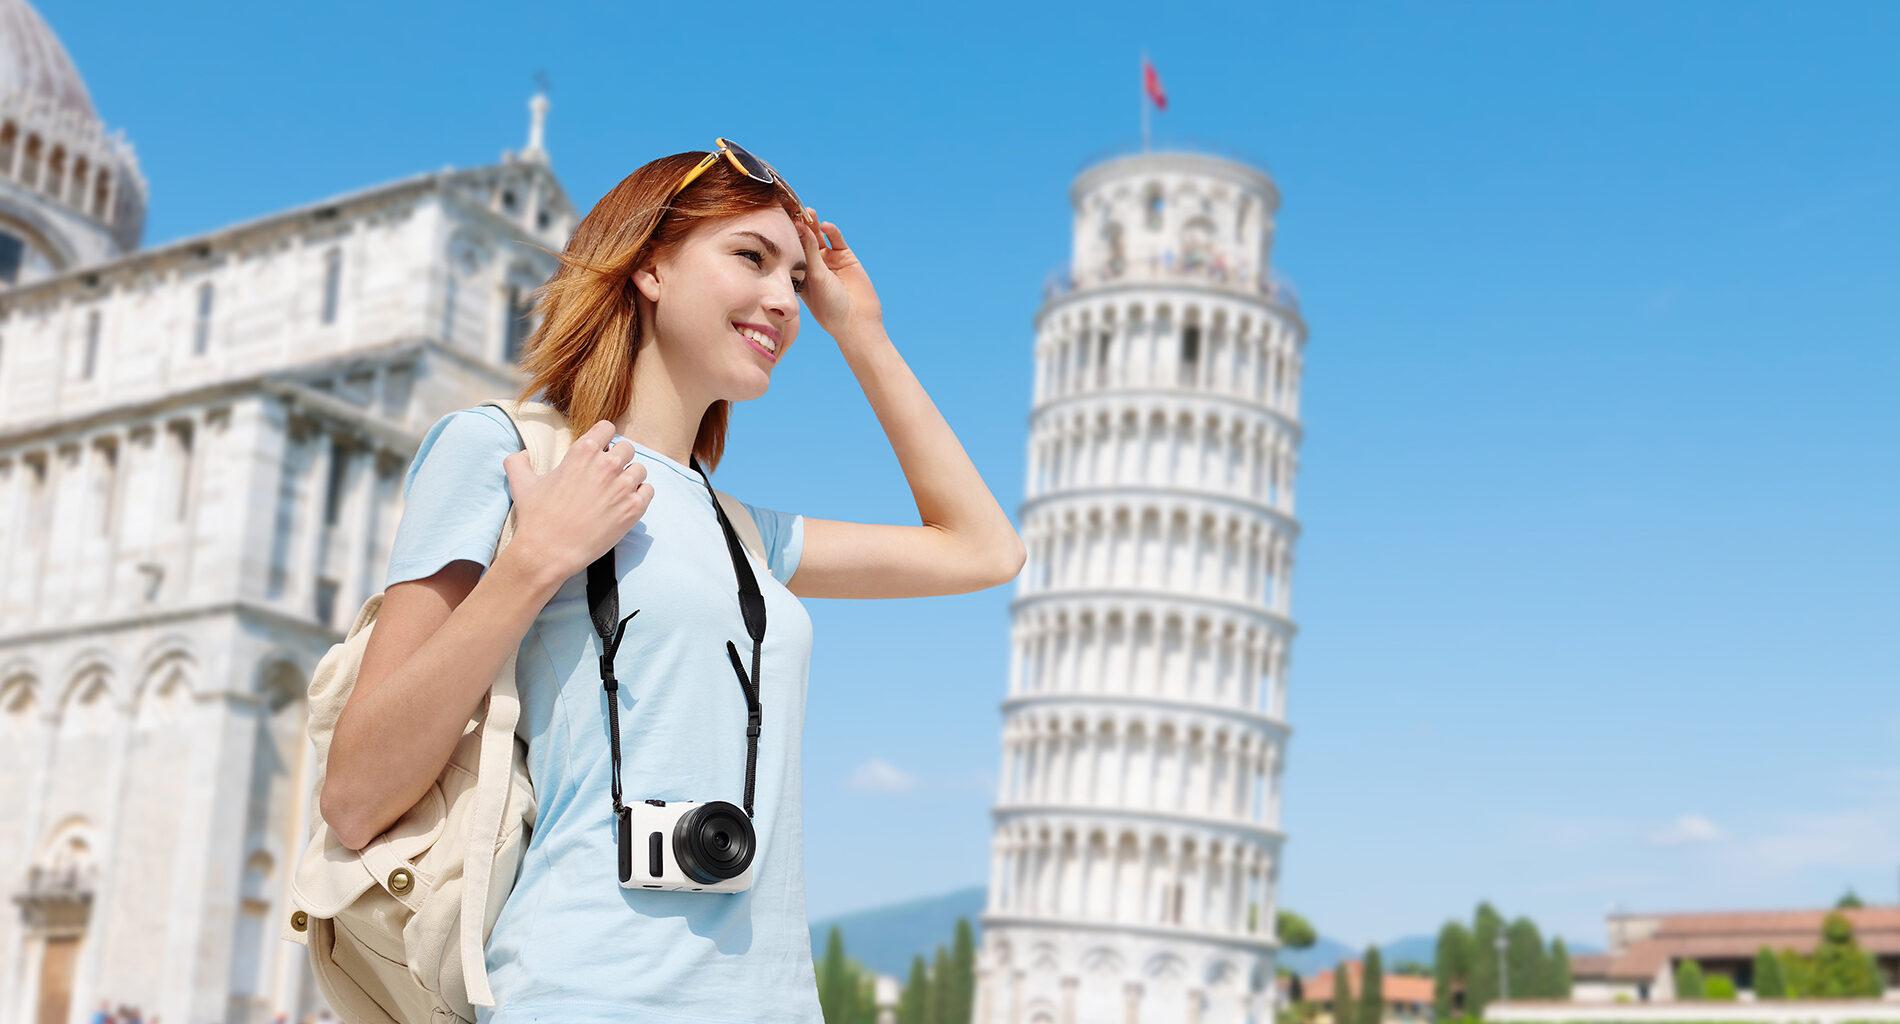 Visit the beautiful city of Pisa